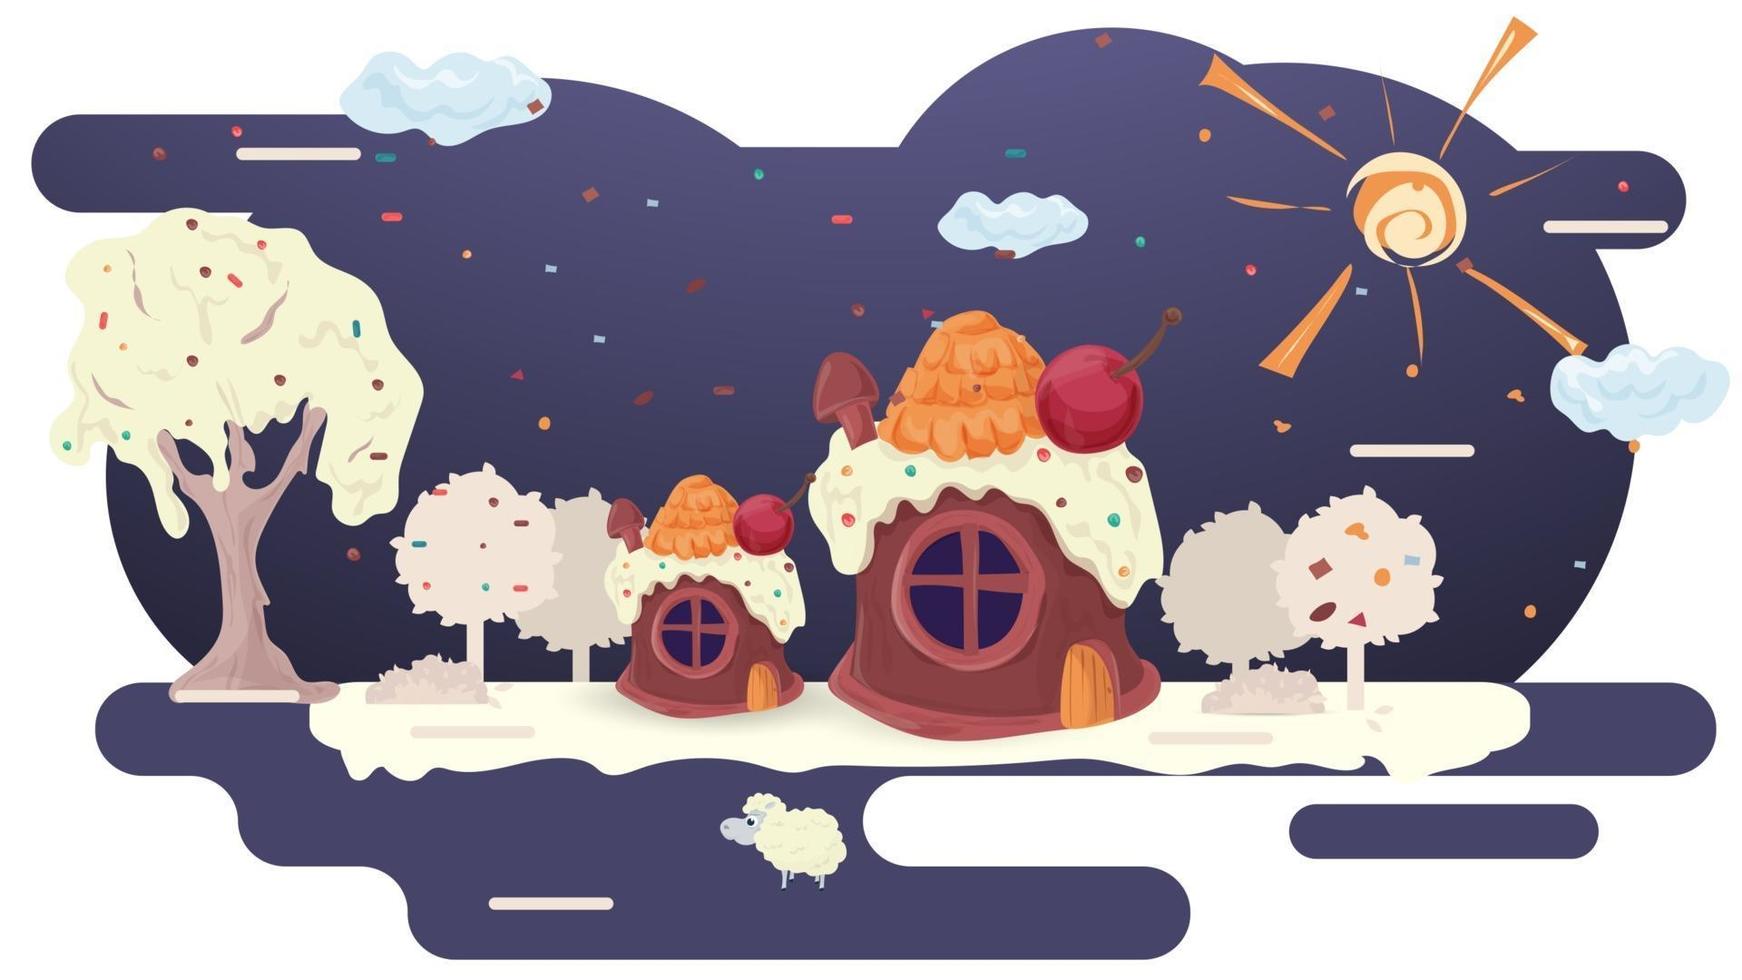 huizen bakken van cupcakes met kersen op het dak en room op de glazuur-glade tussen de bomen platte vectorillustratie voor design design vector